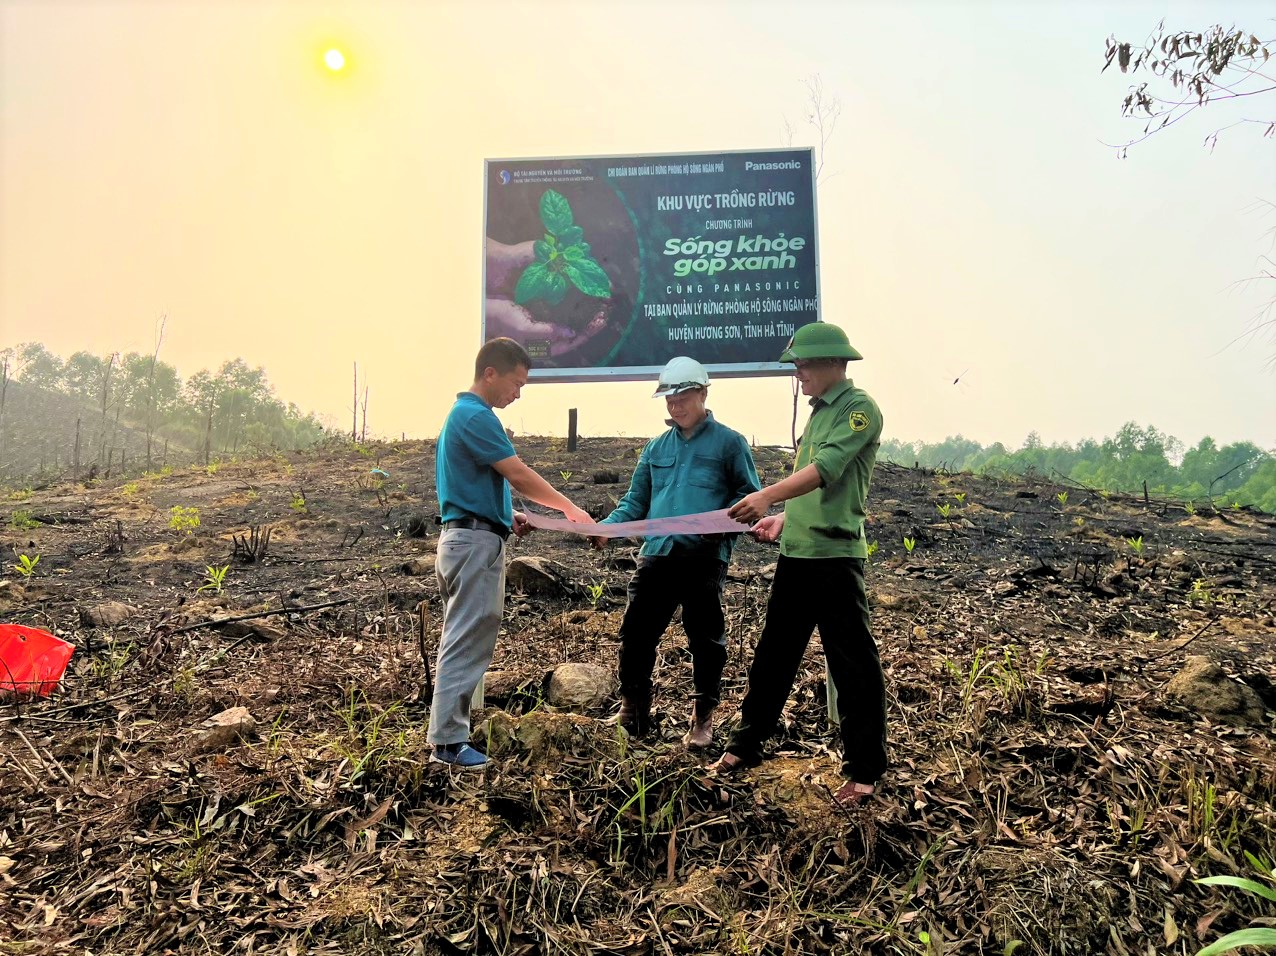 355.000 cây được trồng, phủ xanh 79 héc ta đất… Cùng điểm lại những thành tựu của chiến dịch “Sống khỏe góp xanh cùng Panasonic”